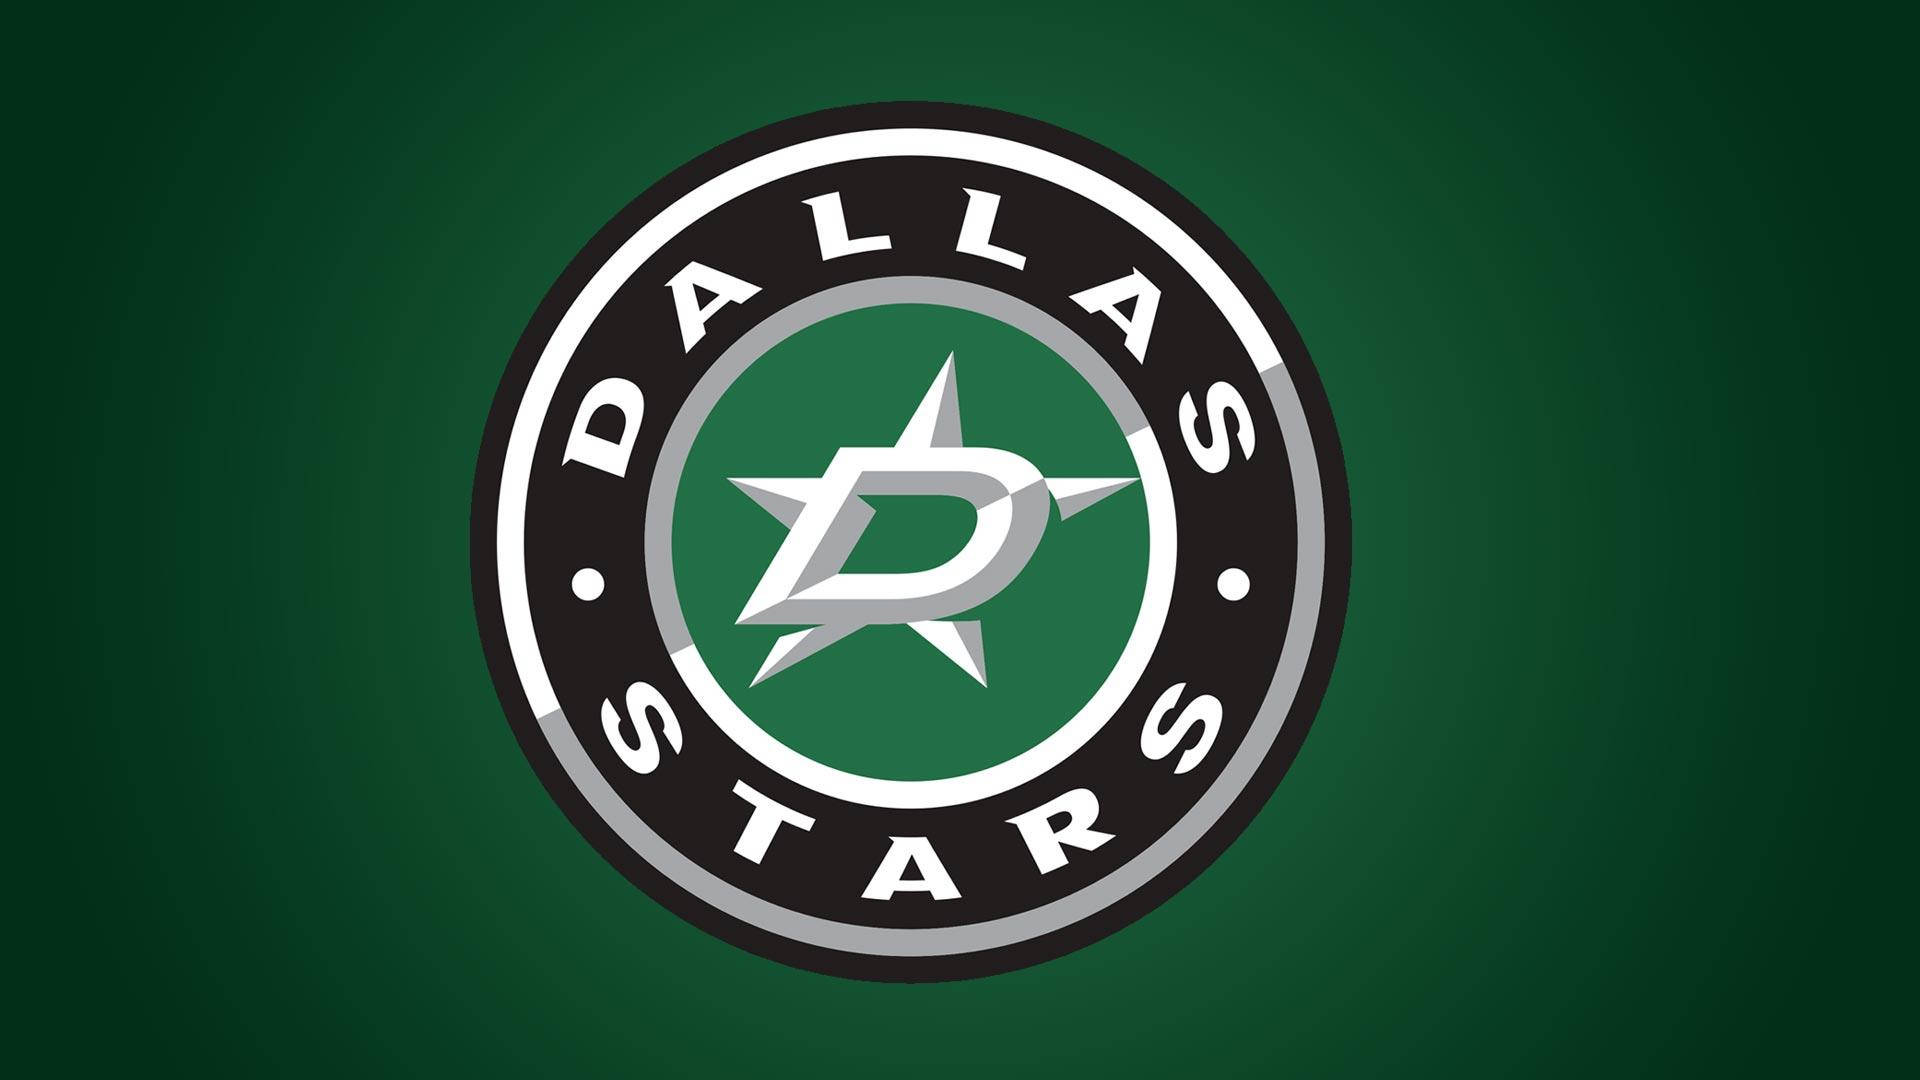 Dallas Stars Classic Logo Background